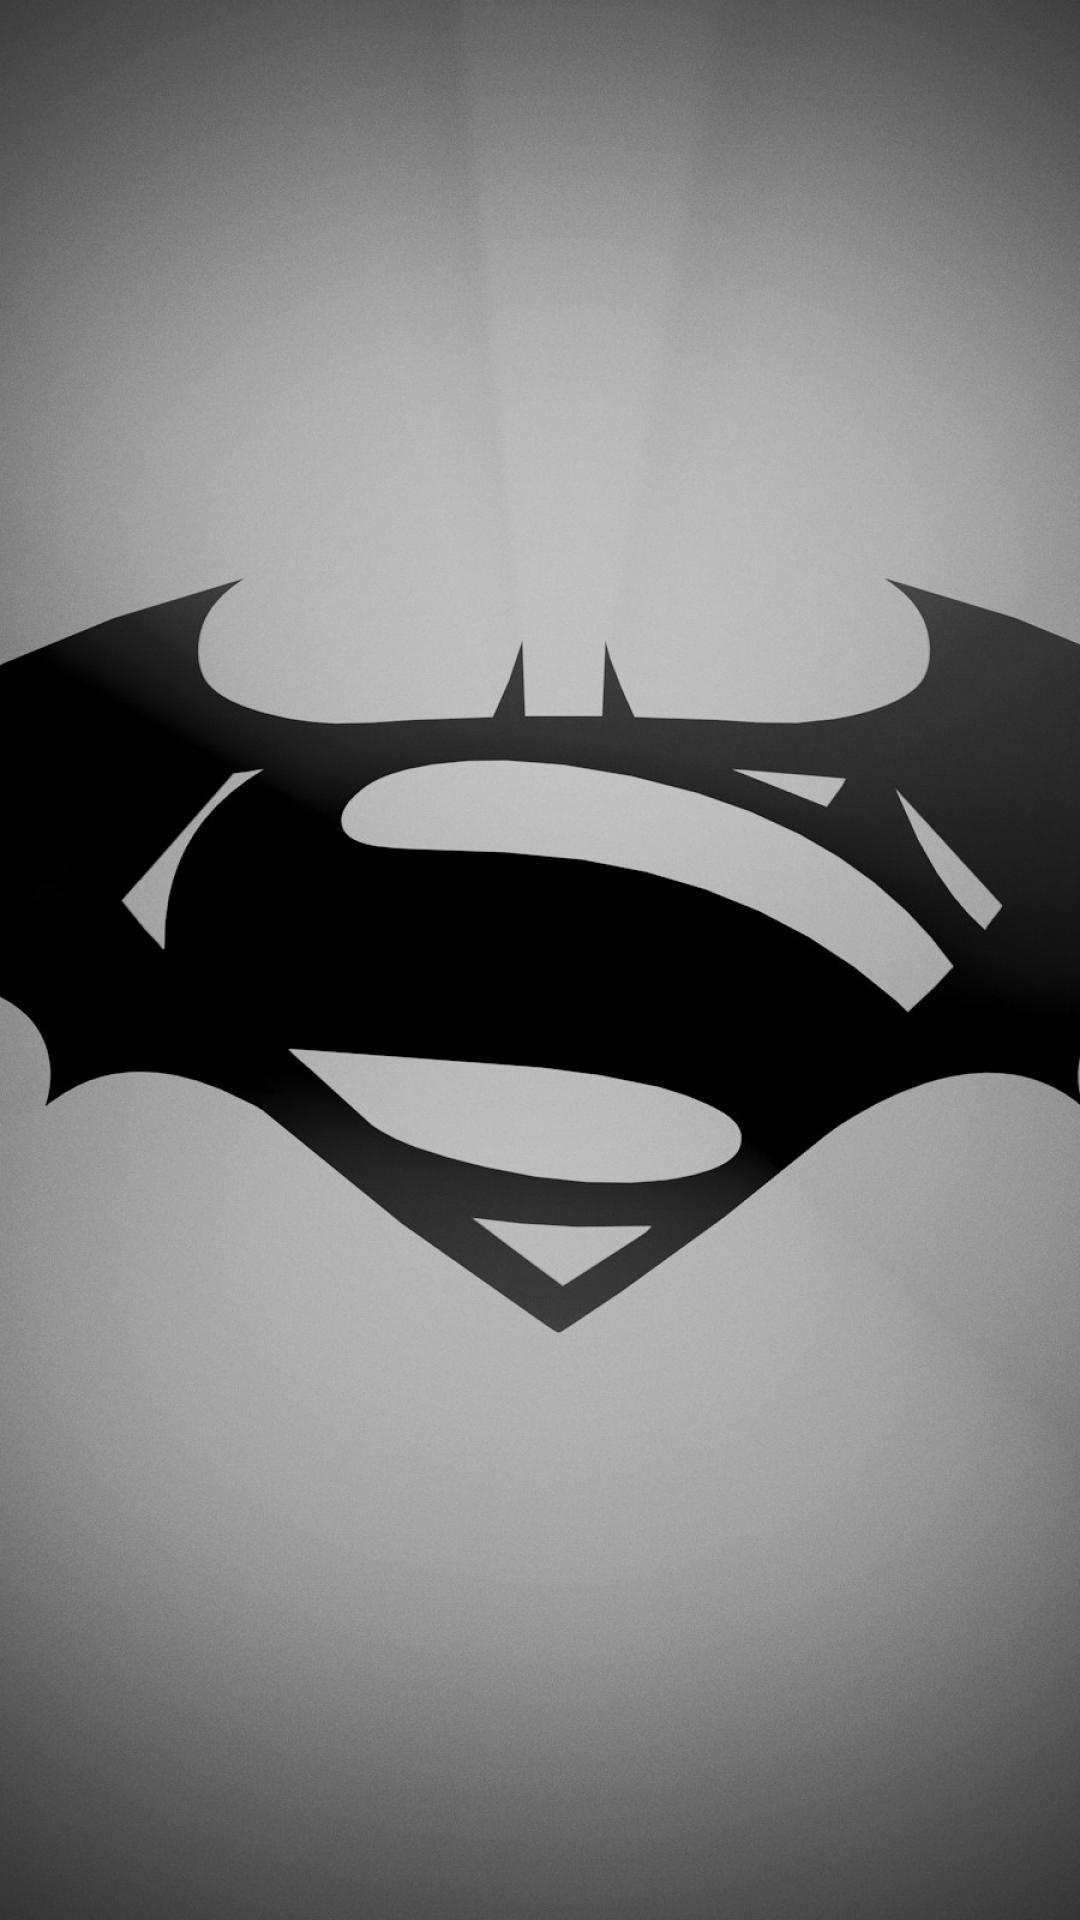 Batman vs superman logo wallpaper